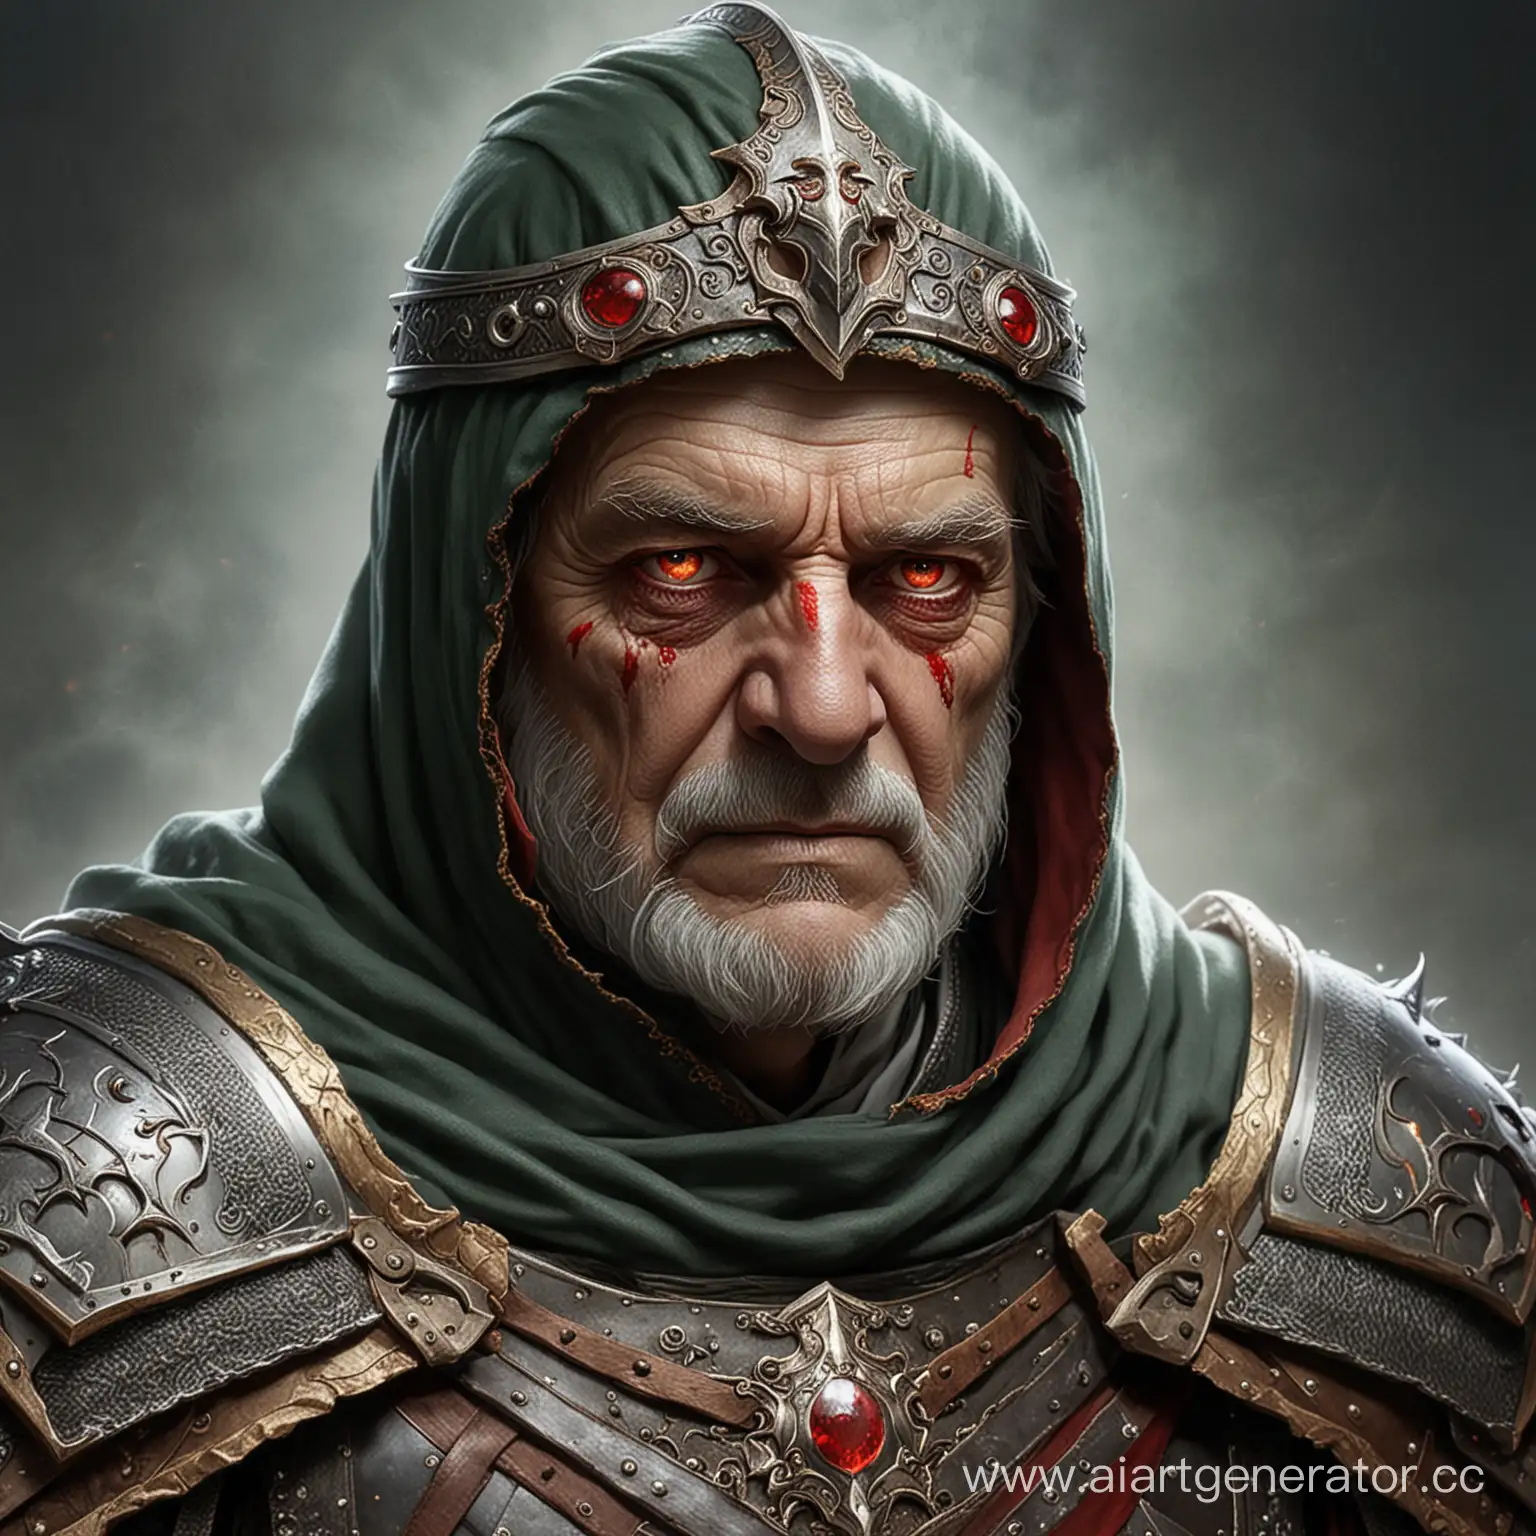 рыцарь пожилого возраста с красными глазами в доспехах и зеленом плаще